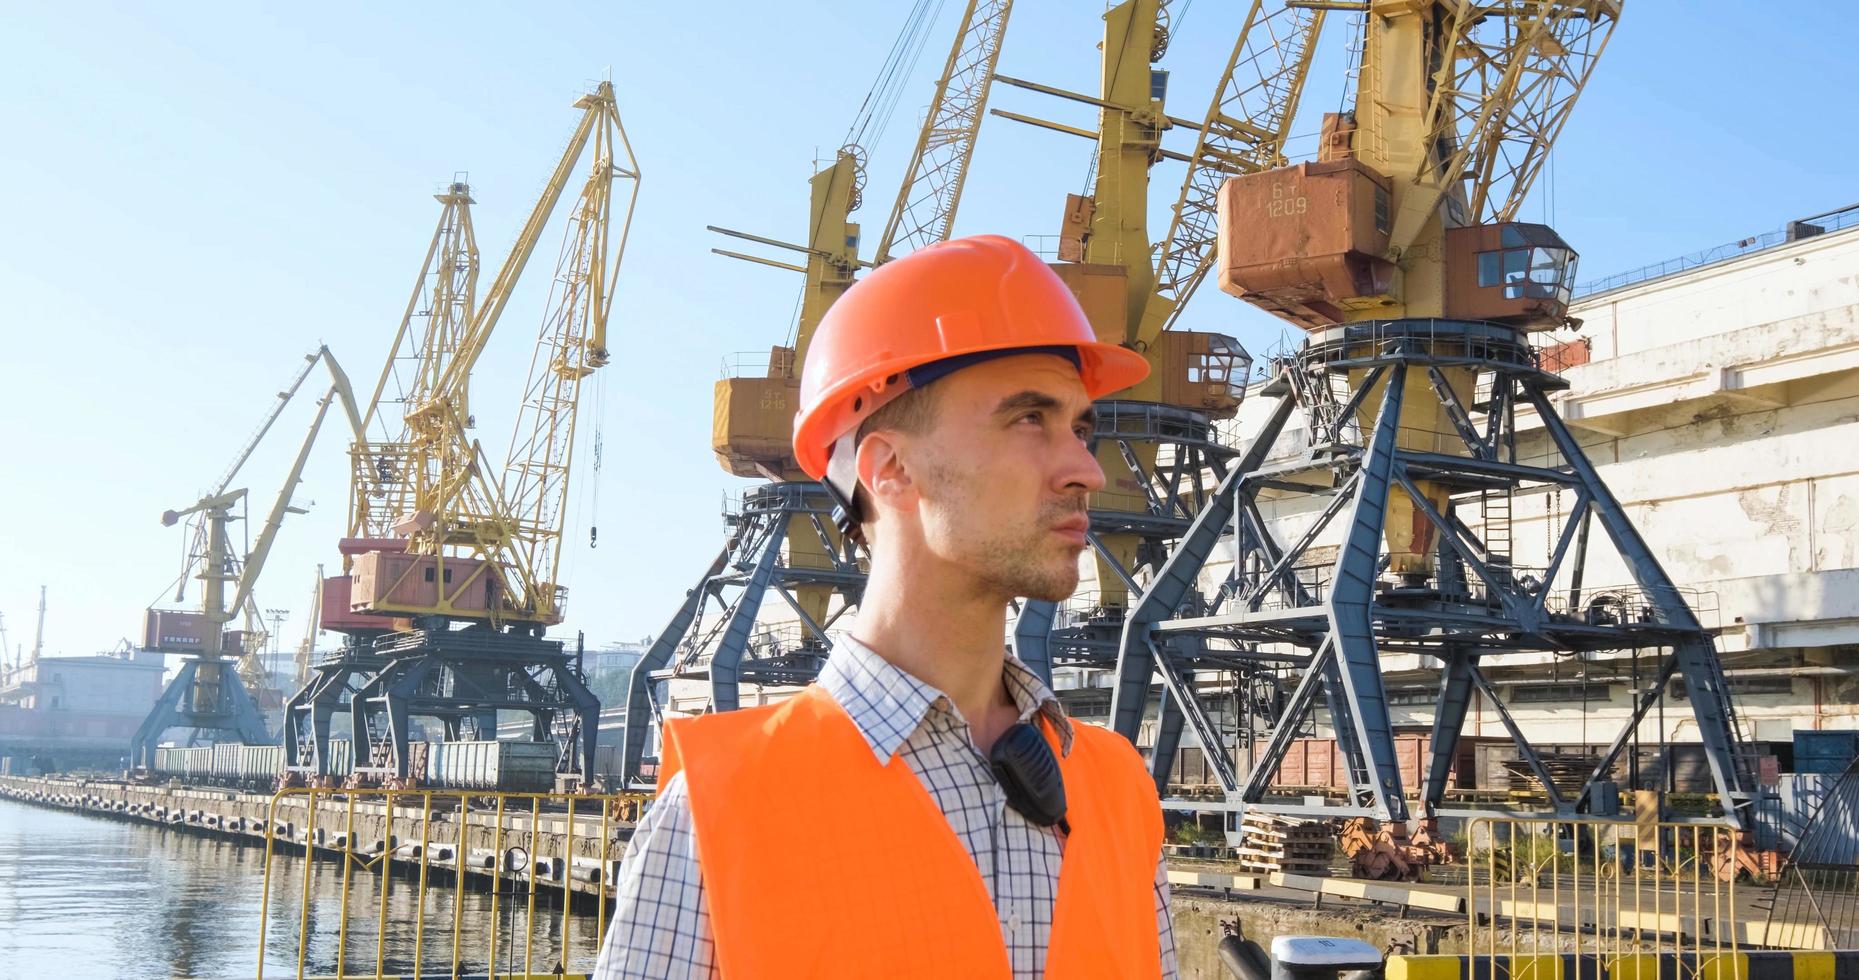 männlicher arbeiter des seehafens in orangefarbenem helm und sicherheitswesten, kranen und meereshintergrund foto